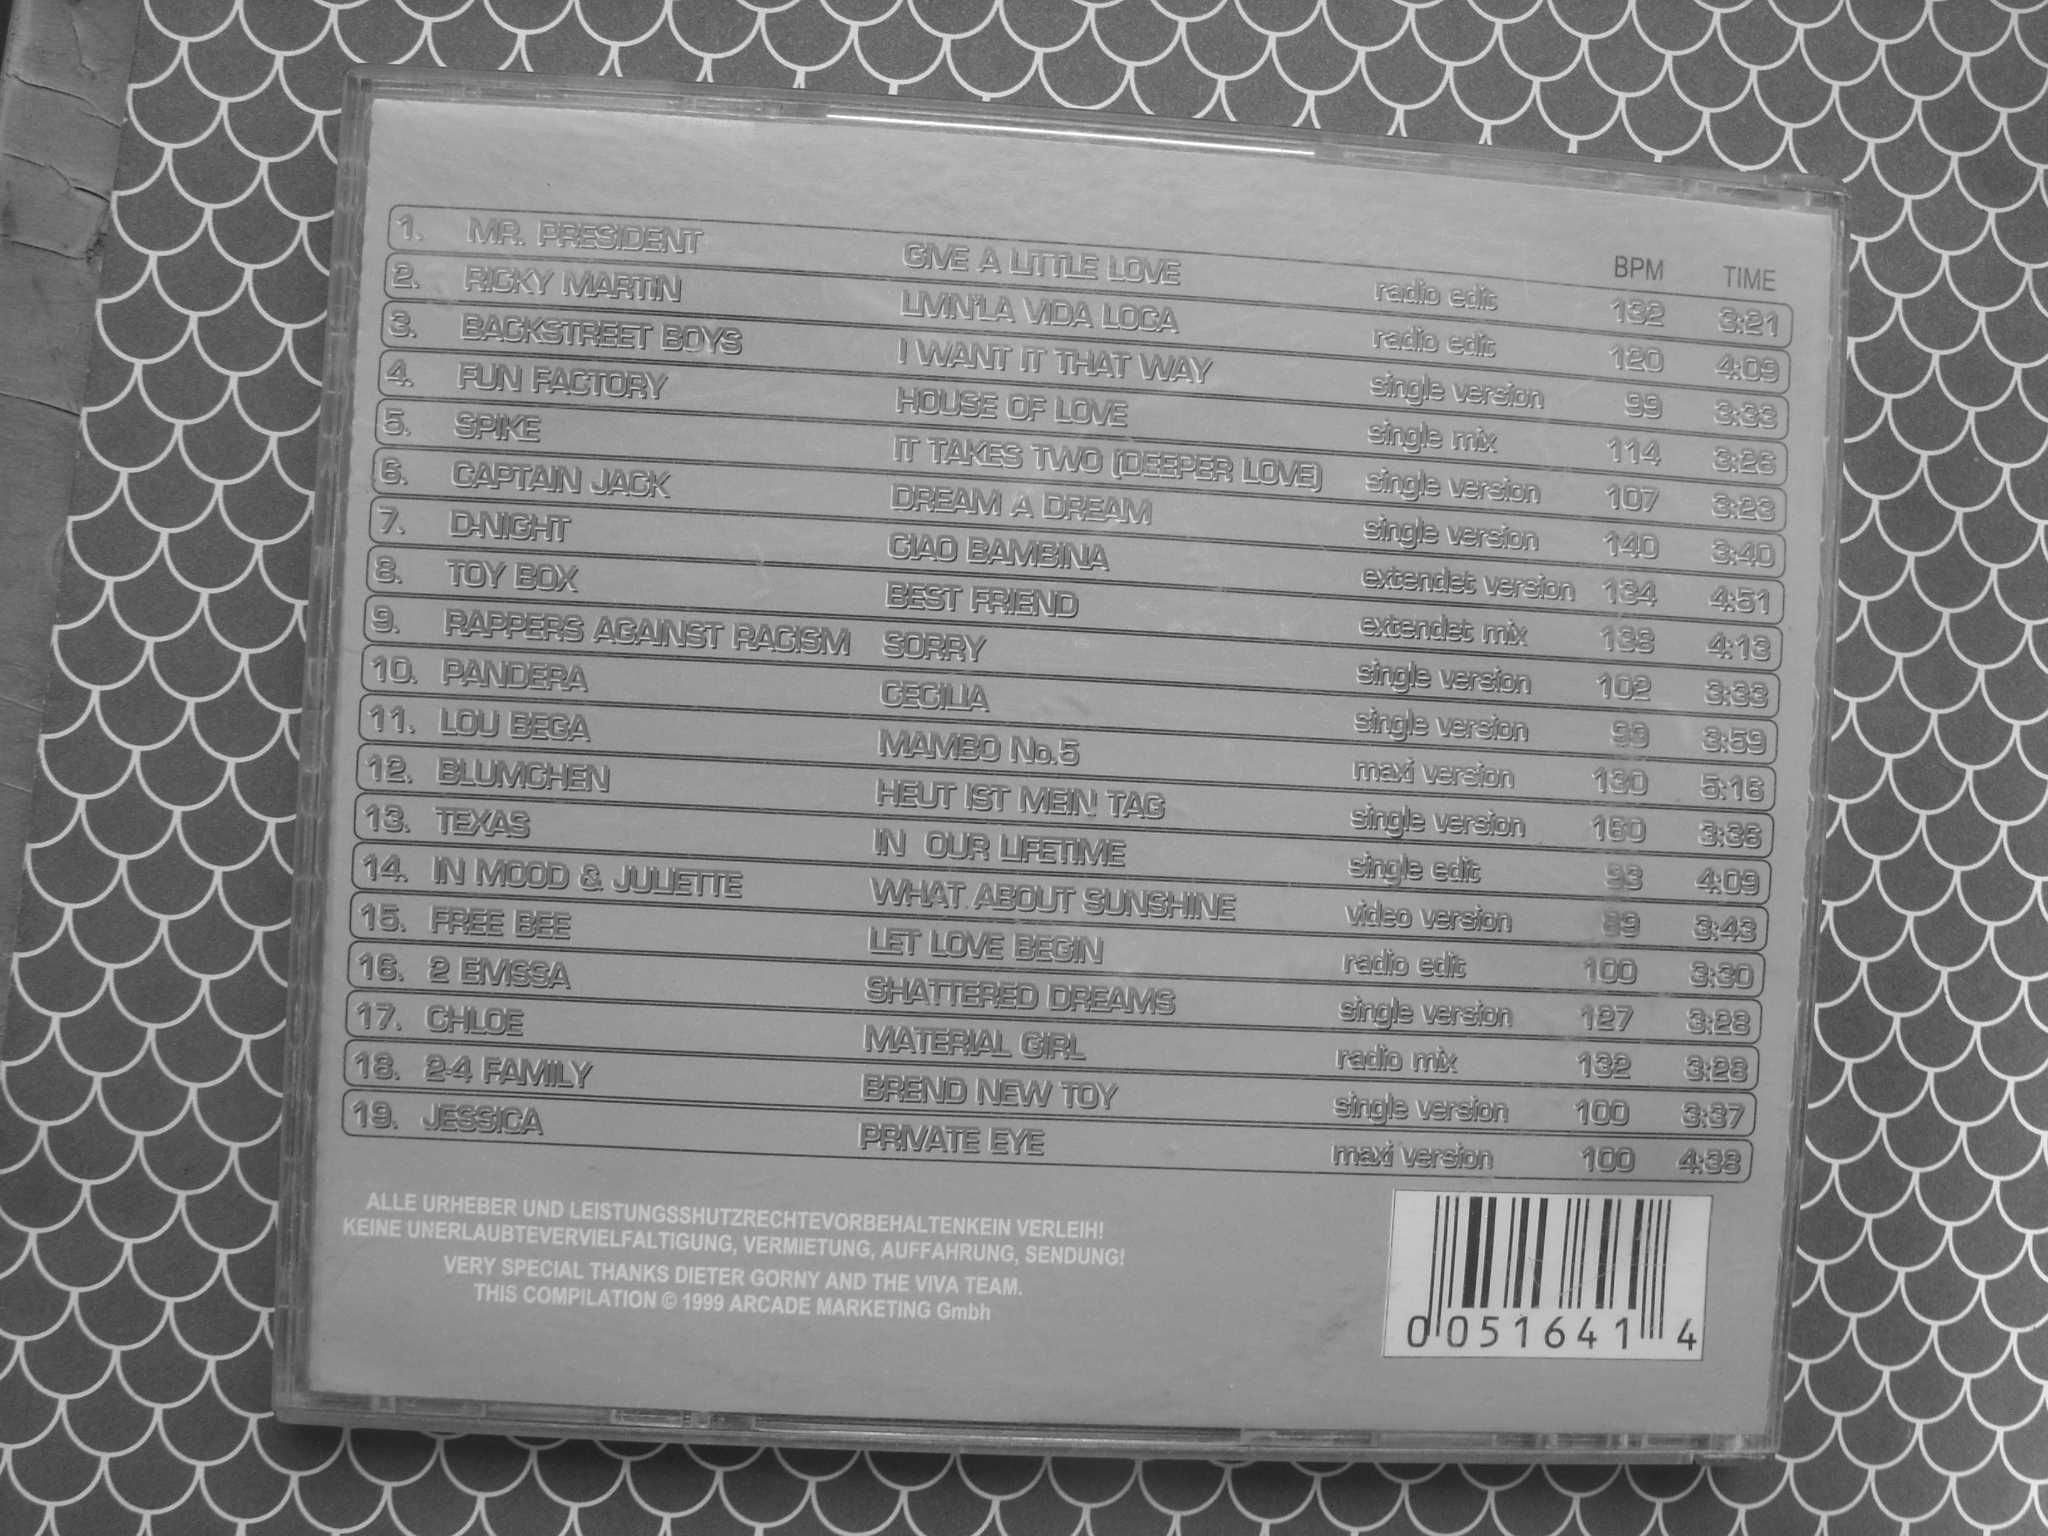 Plyta CD--VIVA EXPLOSIV '99--Limited edition